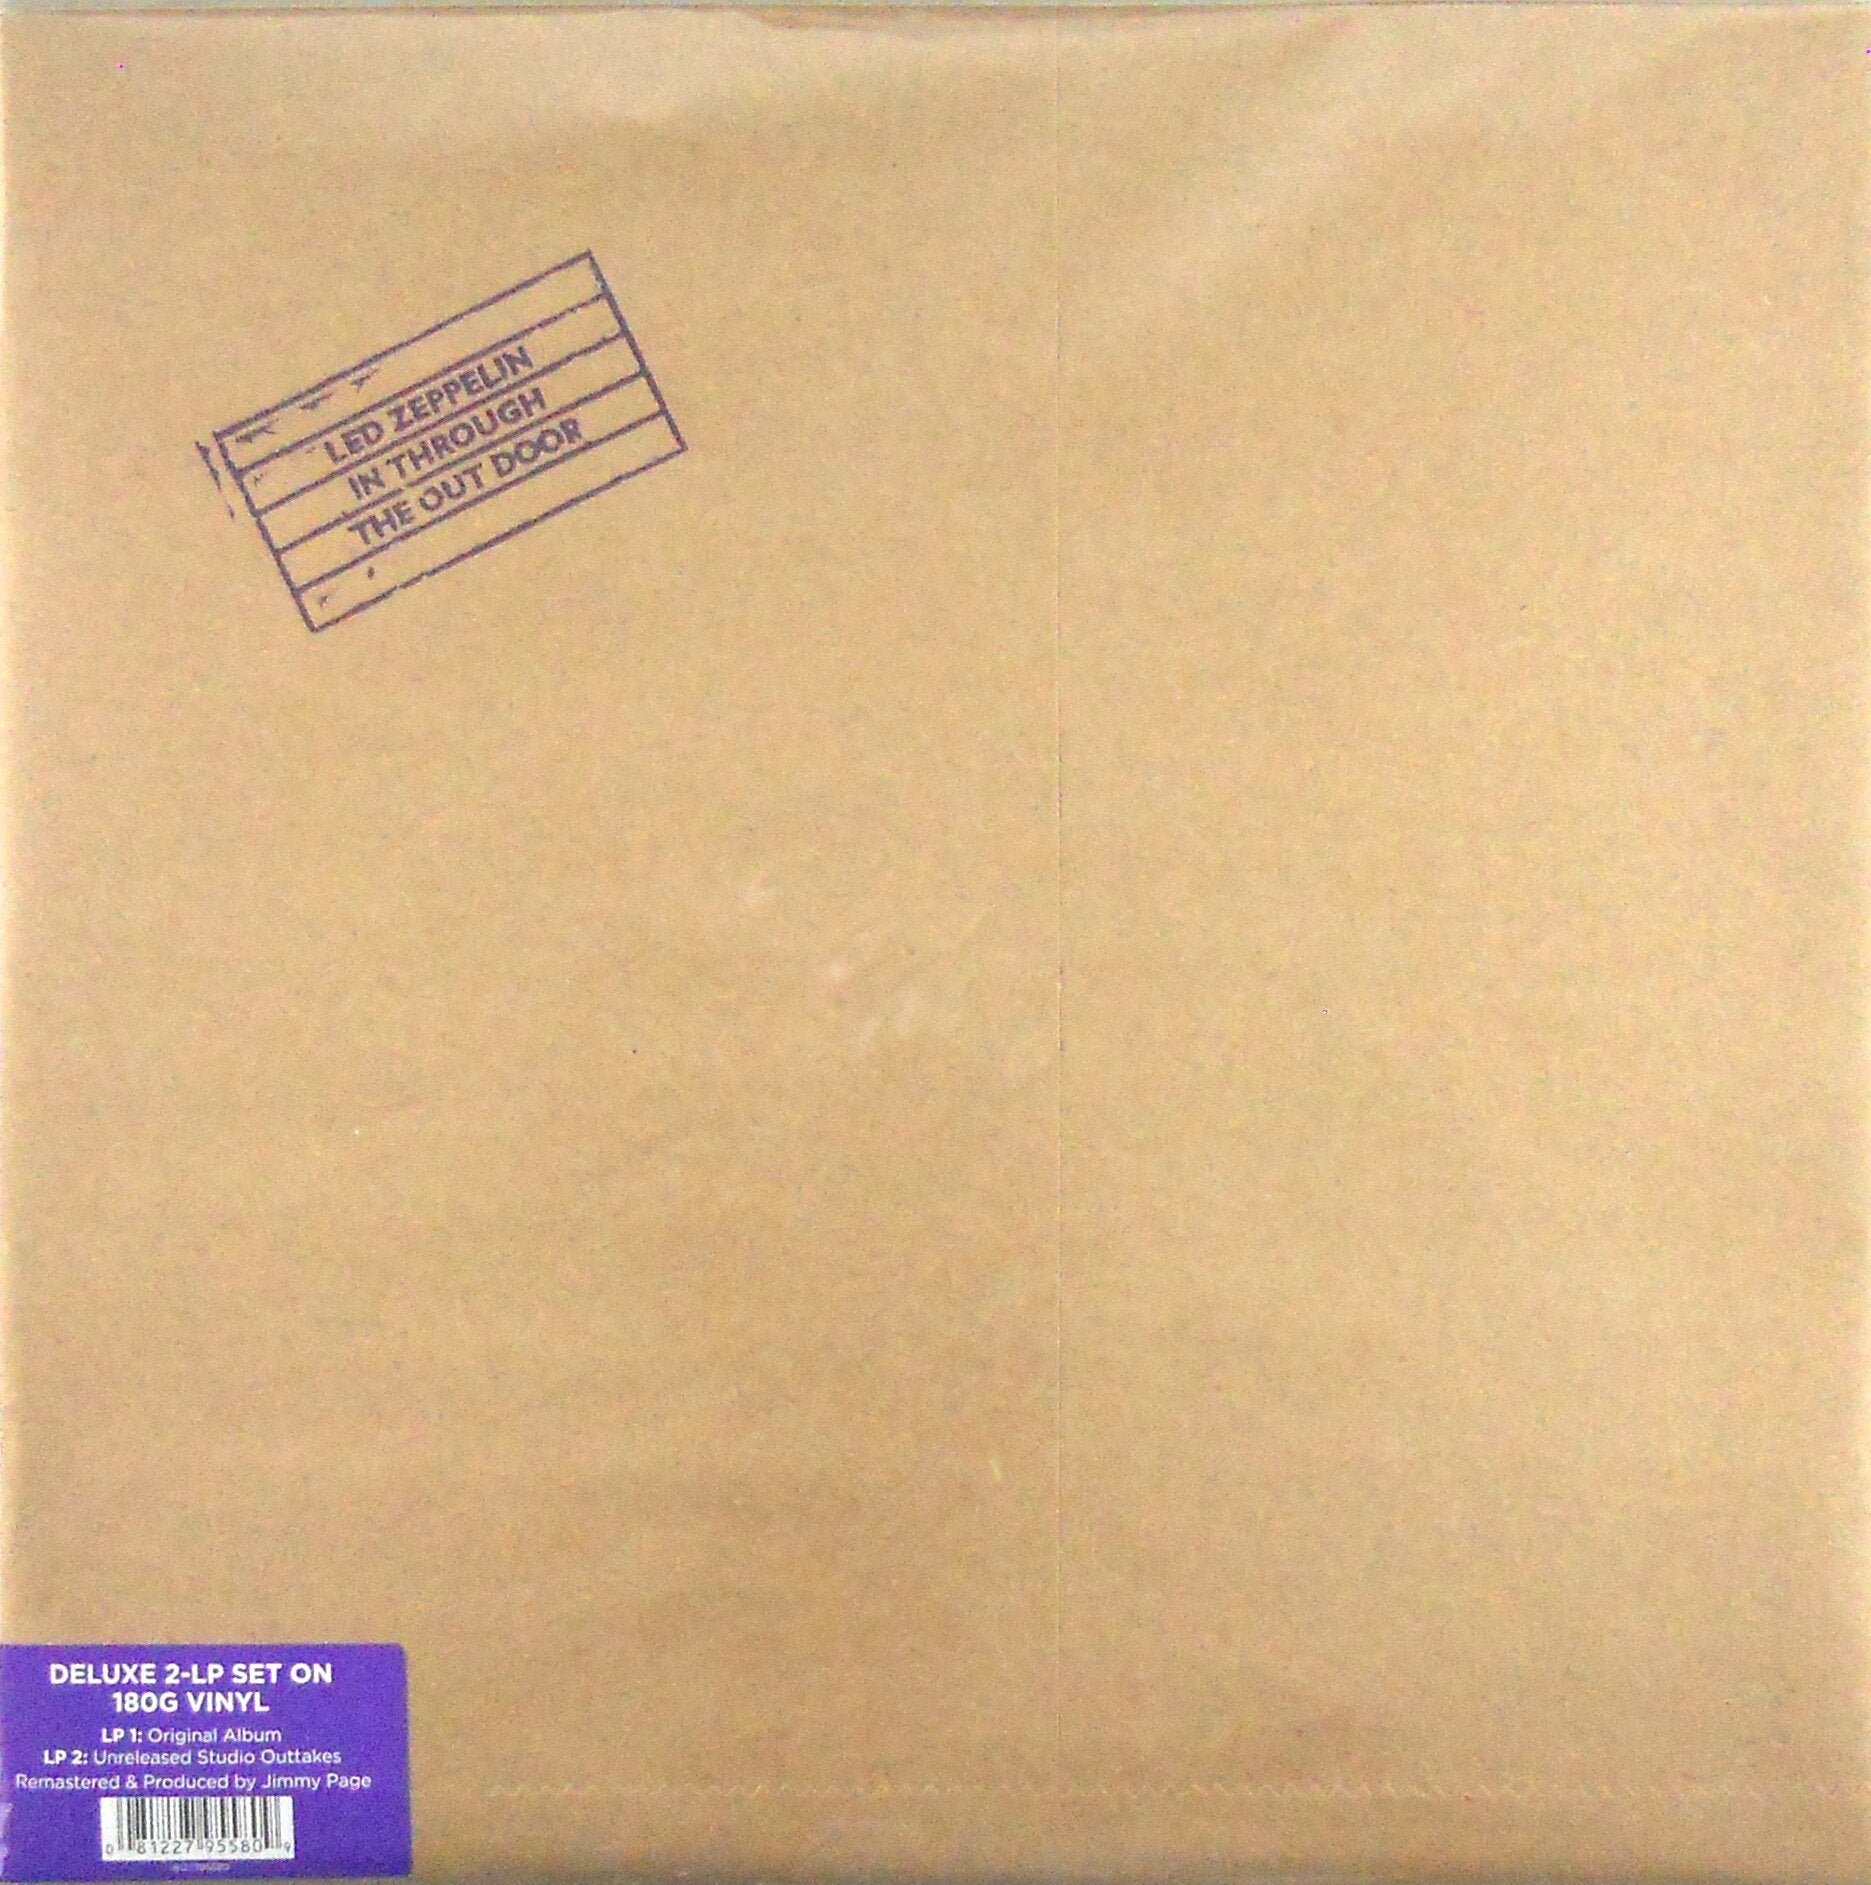 Led Zeppelin - In Through The Out Door Deluxe (Vinyl 2LP Record)